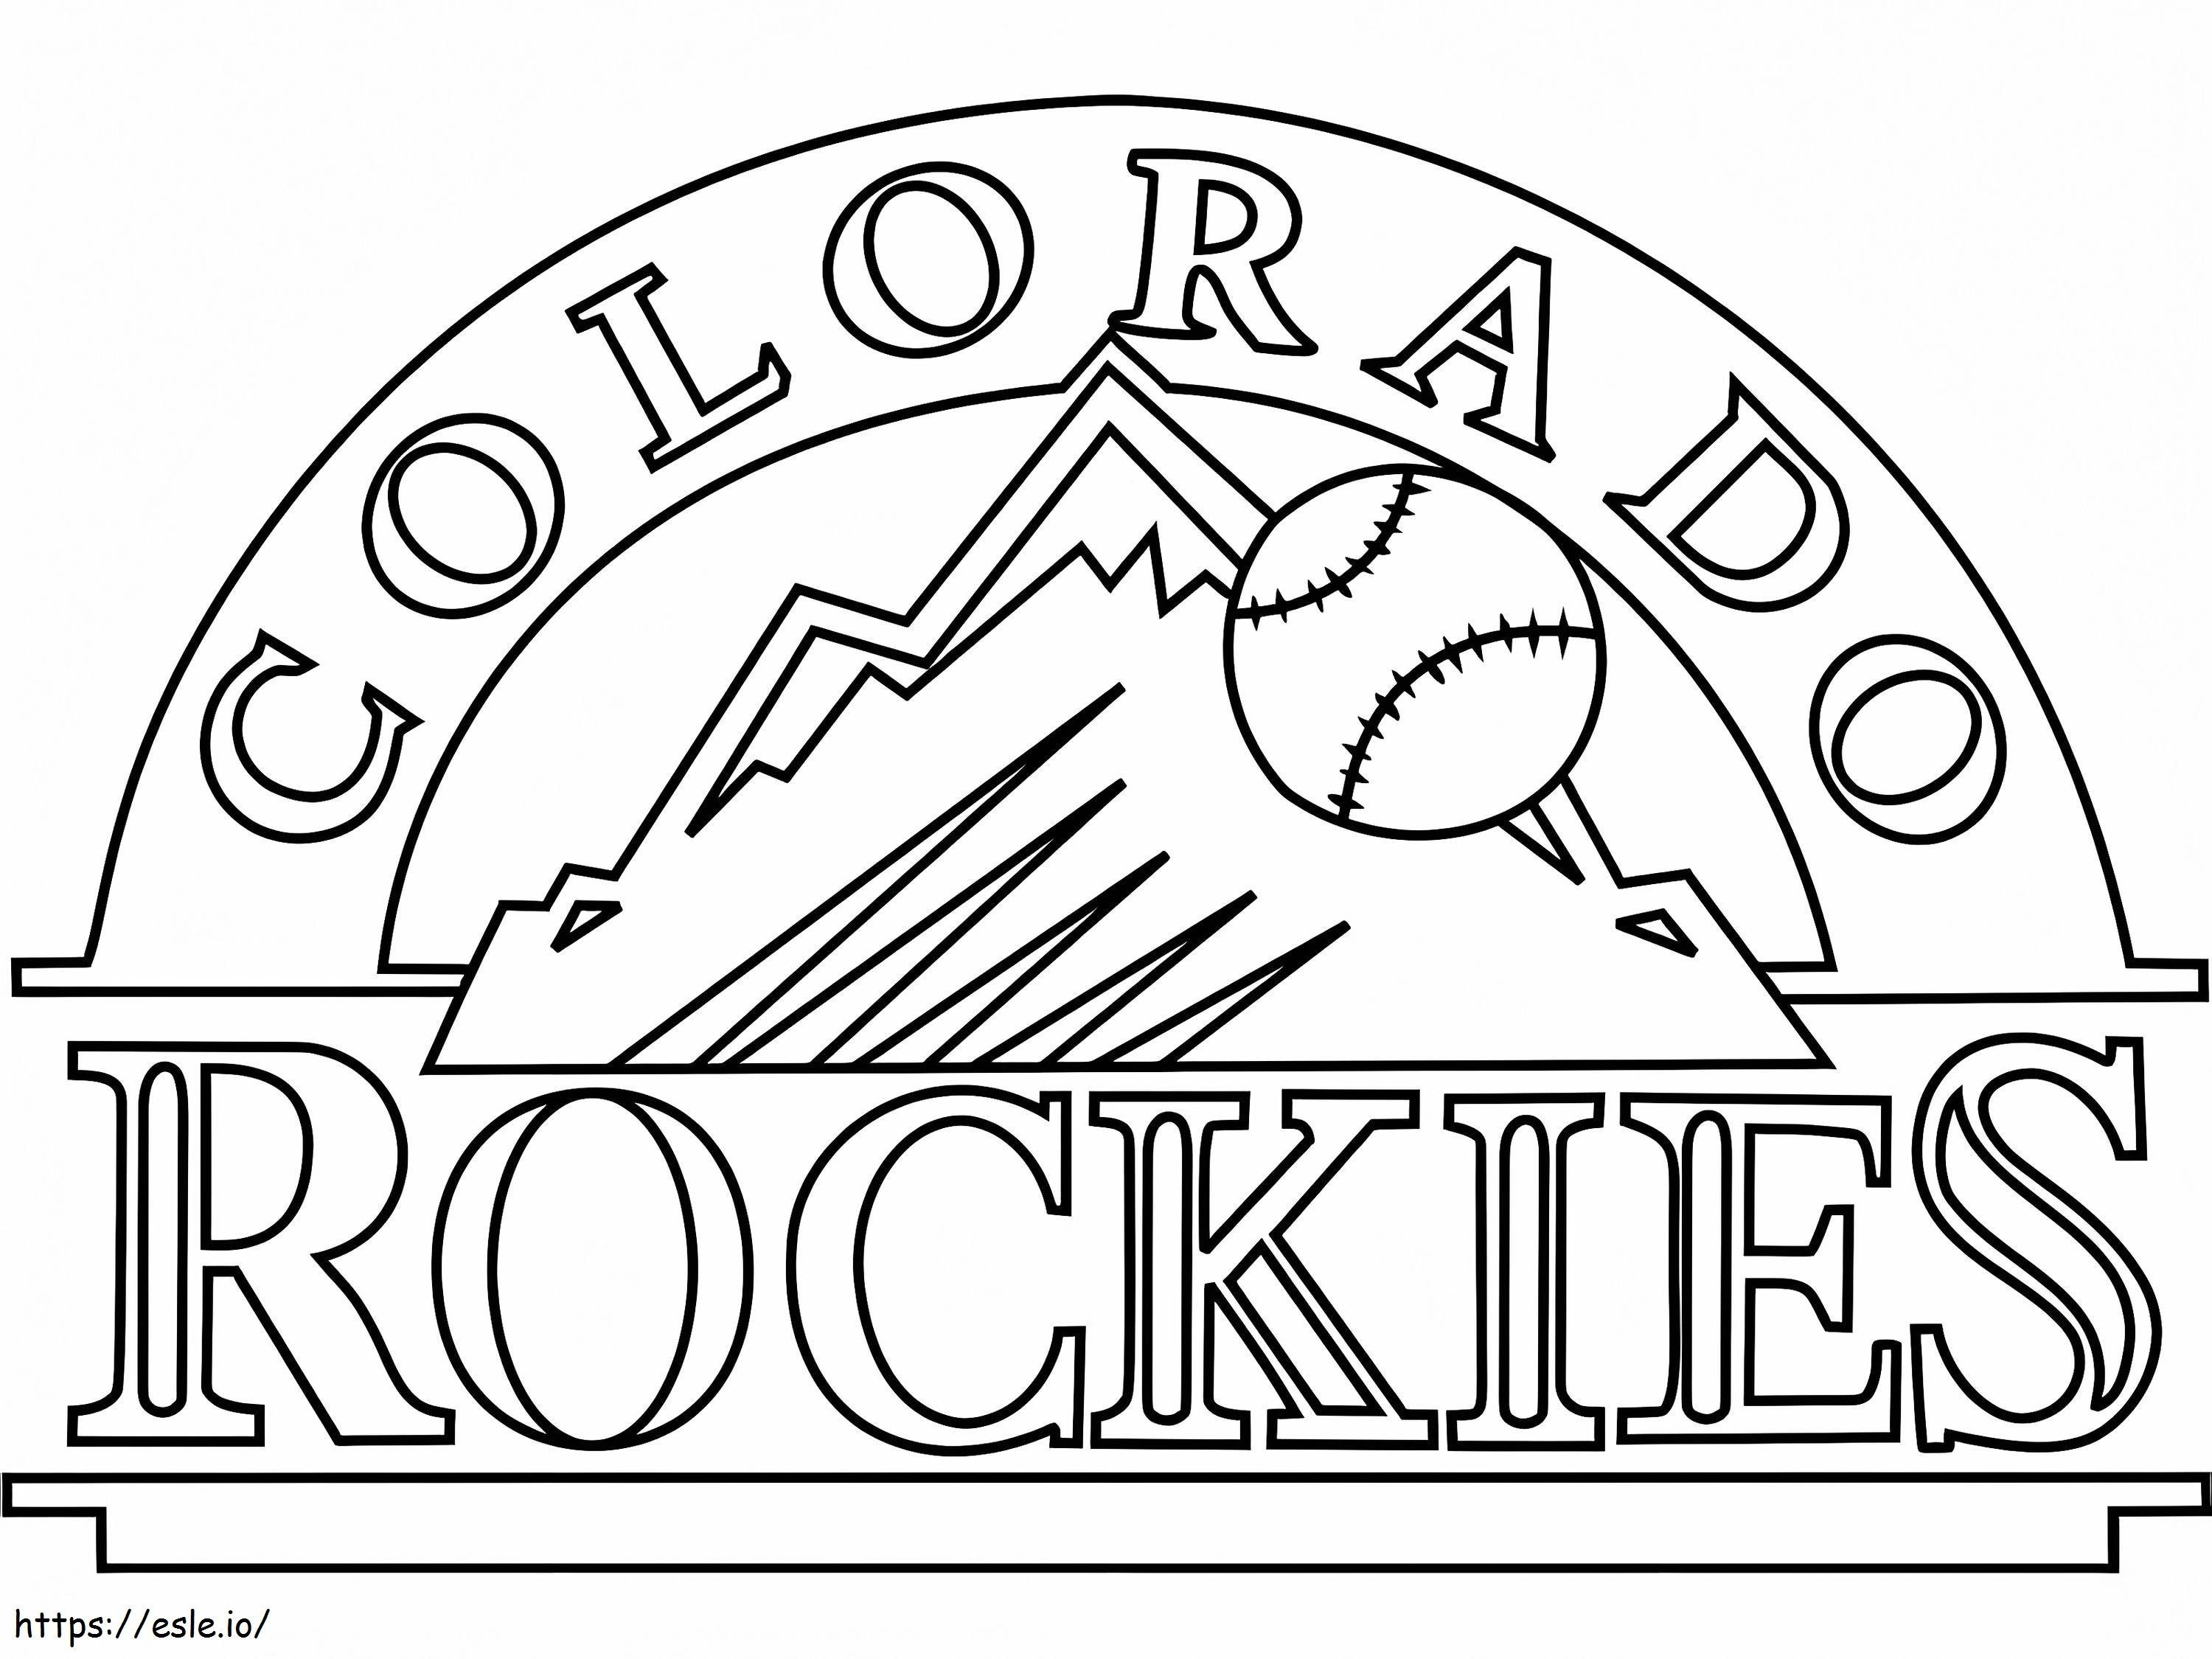 Logo Gór Skalistych Kolorado kolorowanka